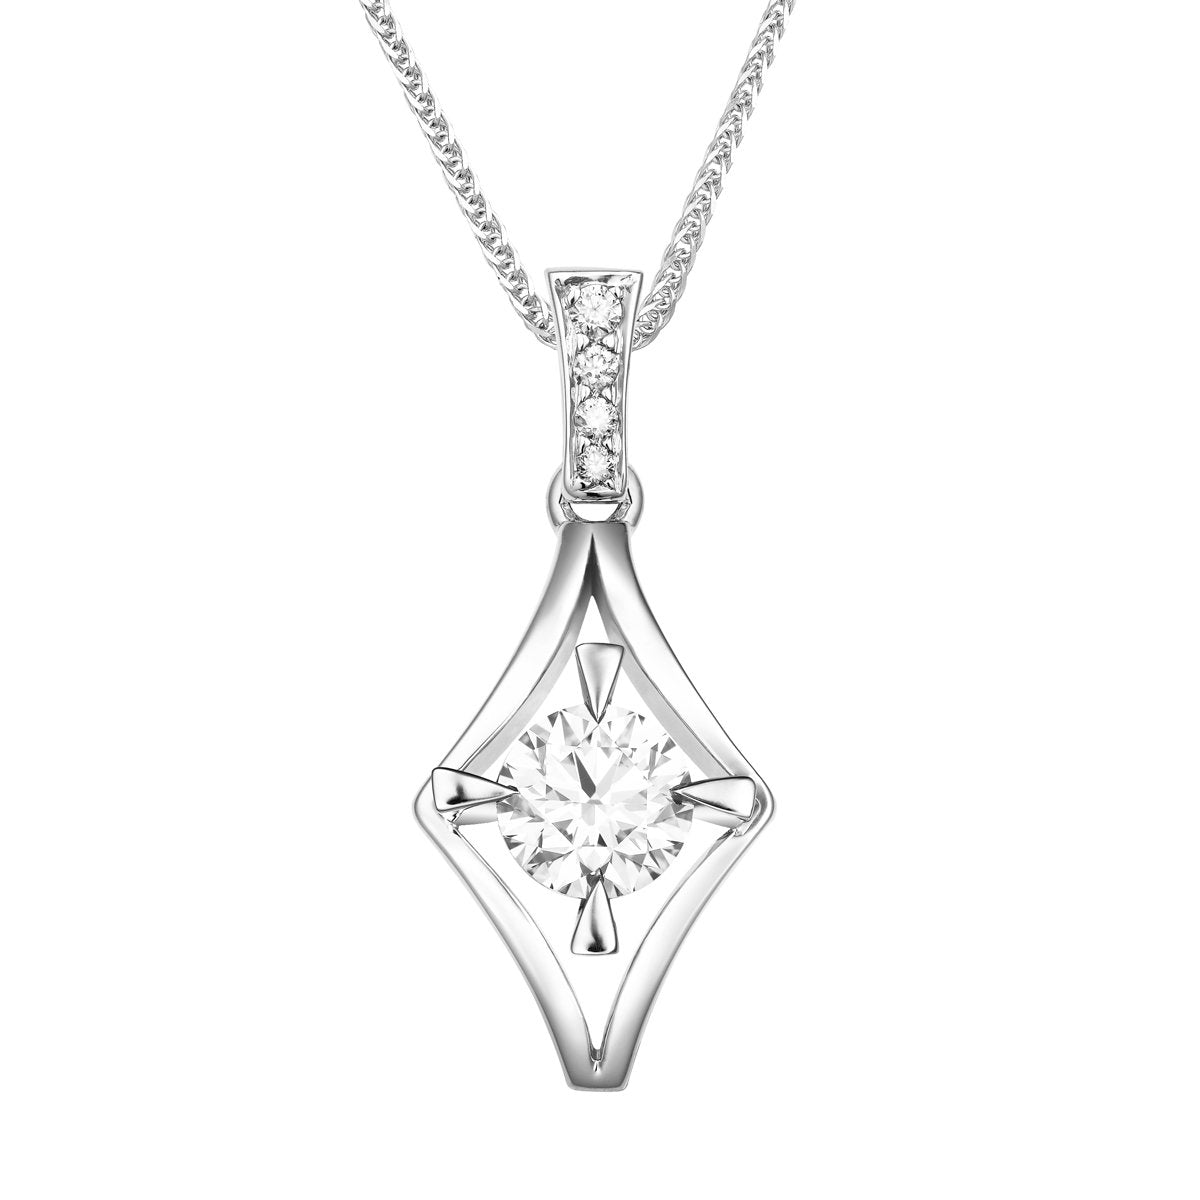 Nova diamond pendant